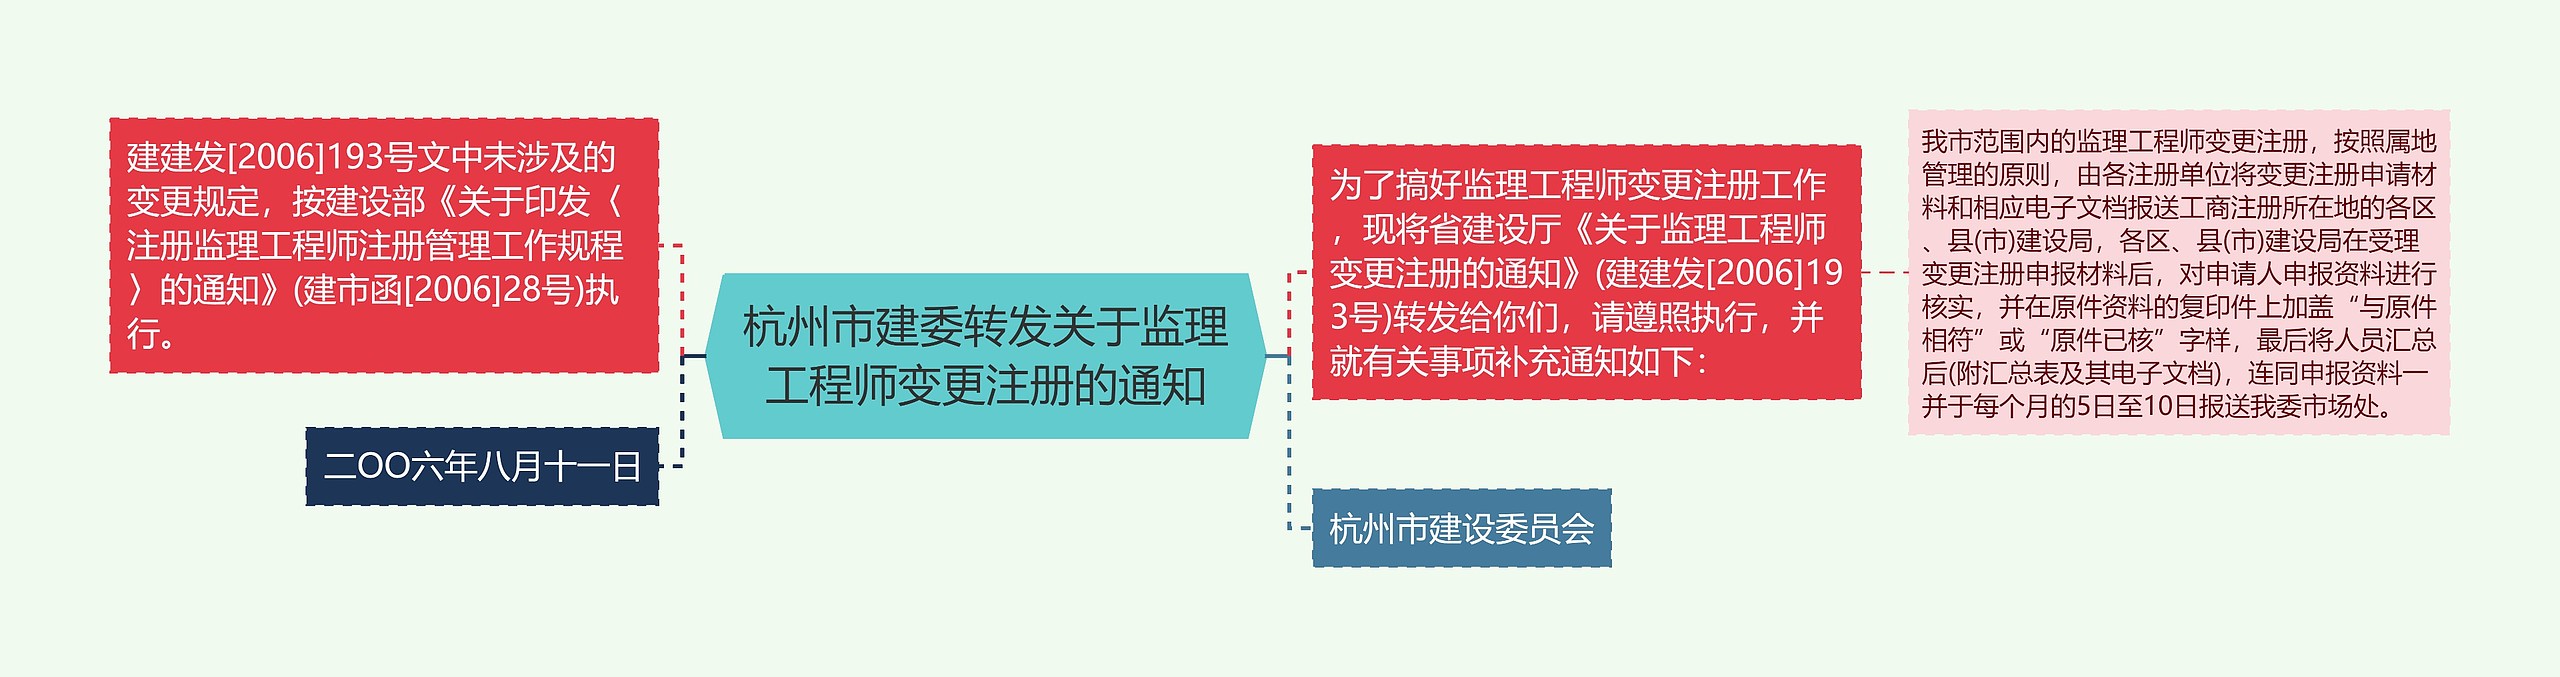 杭州市建委转发关于监理工程师变更注册的通知思维导图